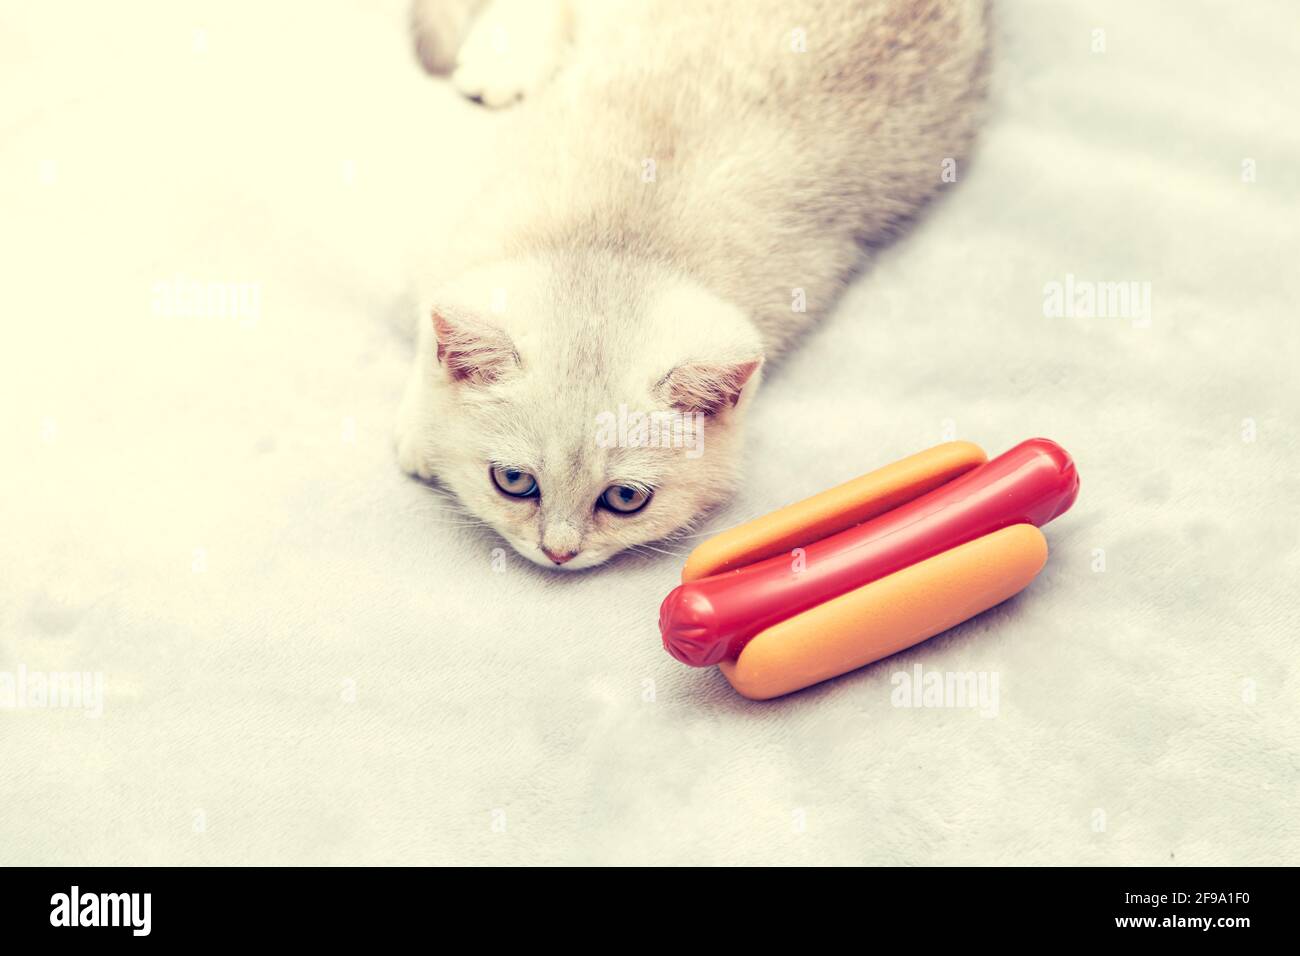 Gattino bianco giace sul letto con un cane caldo. Concetto di stile di vita povero - immobilità e abitudini alimentari malsane. Foto Stock